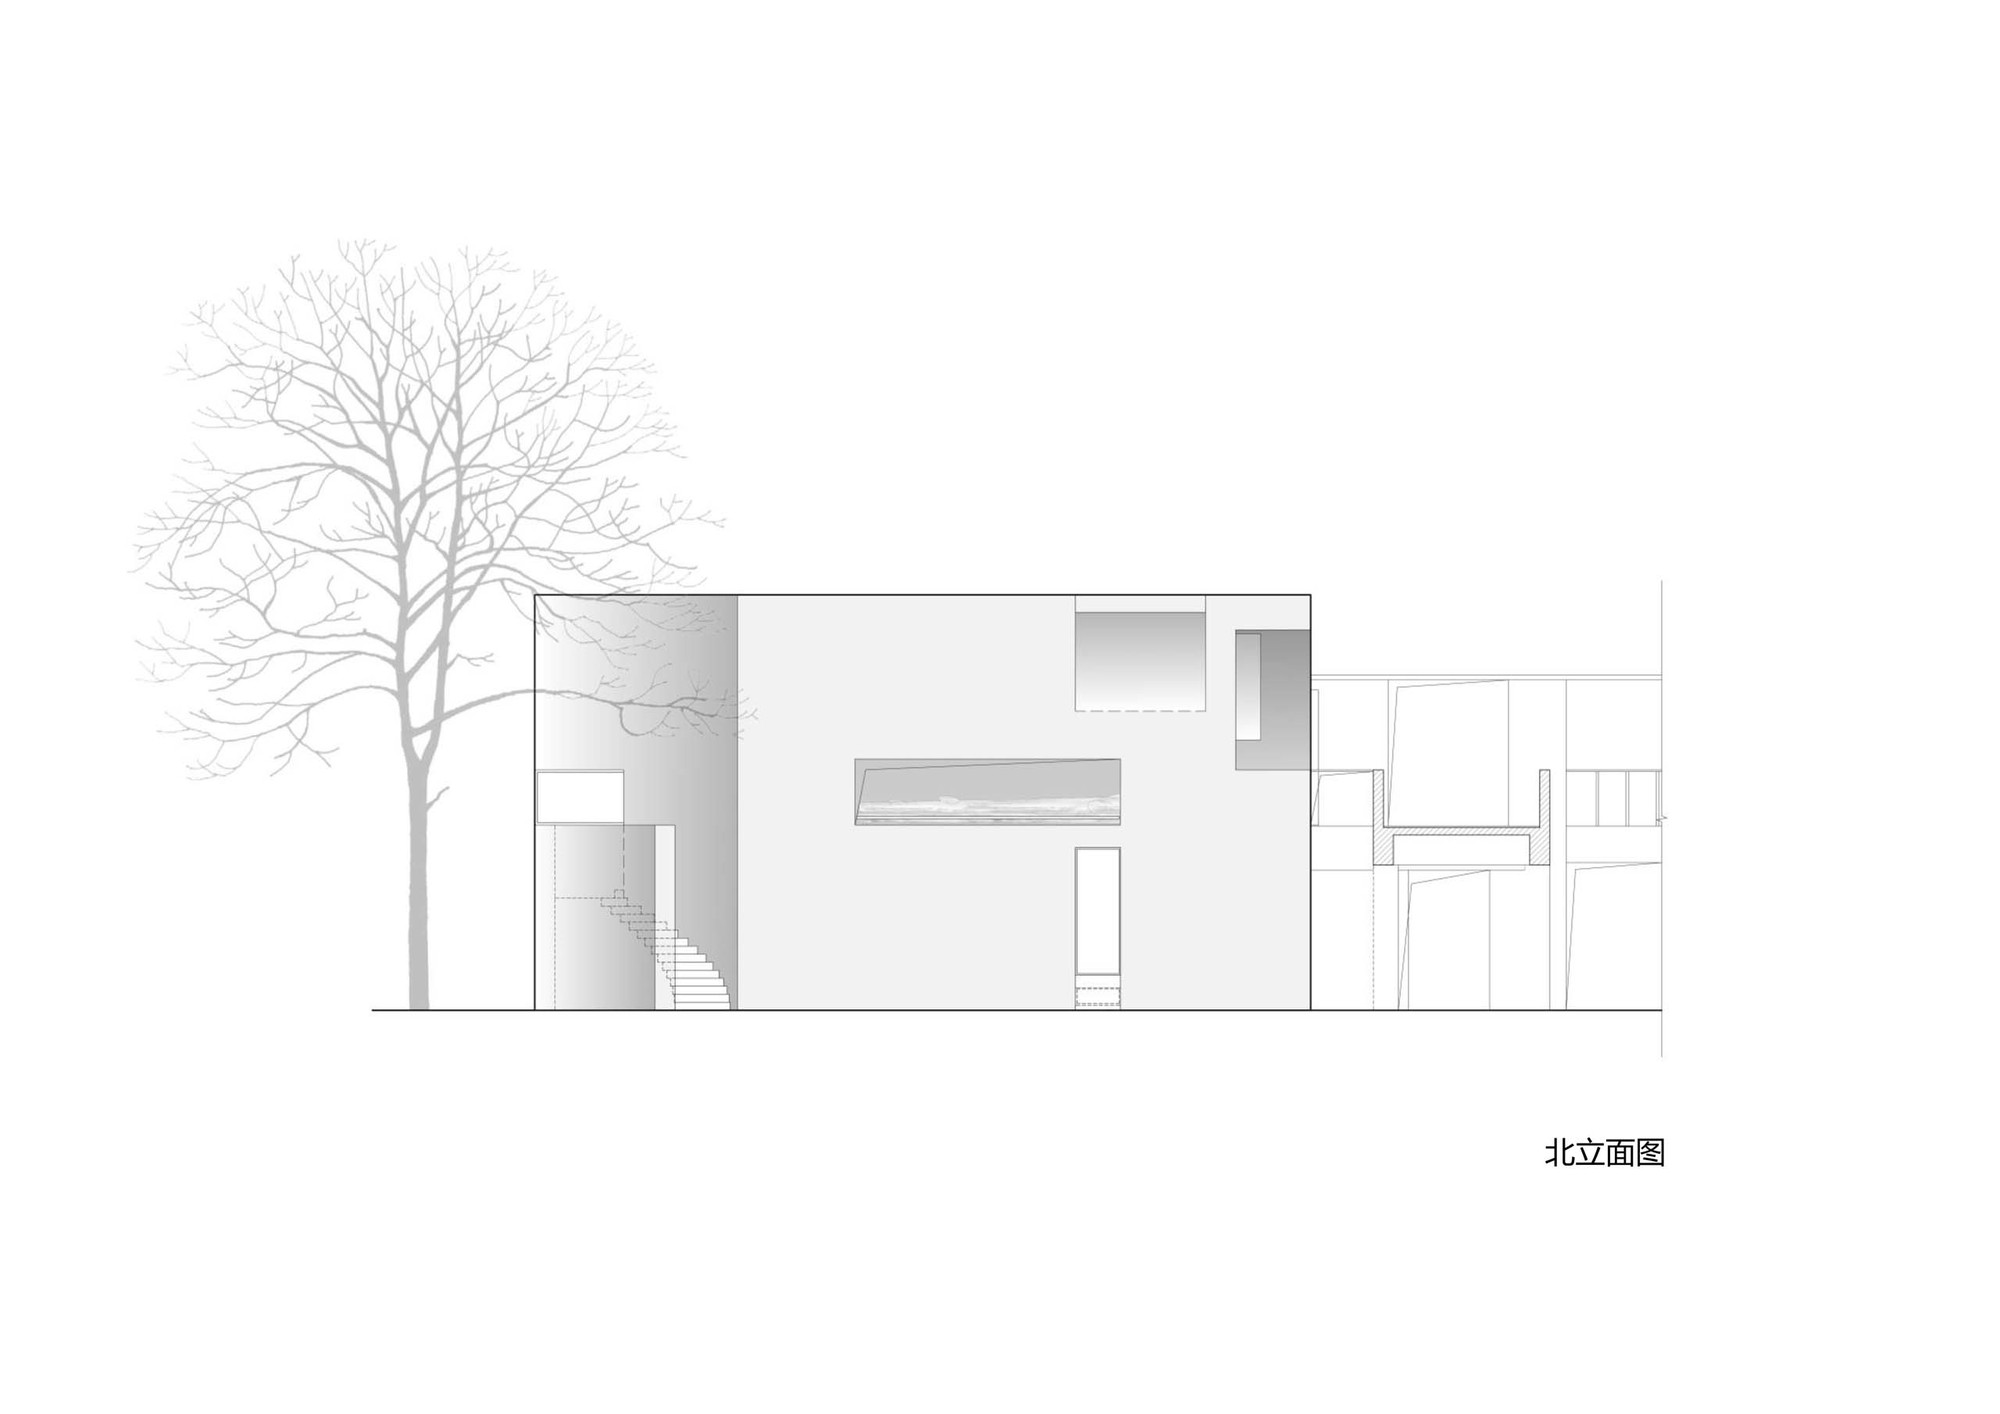 南京艺术学院-砼展厅建筑设计/上海中森建筑与工程设计